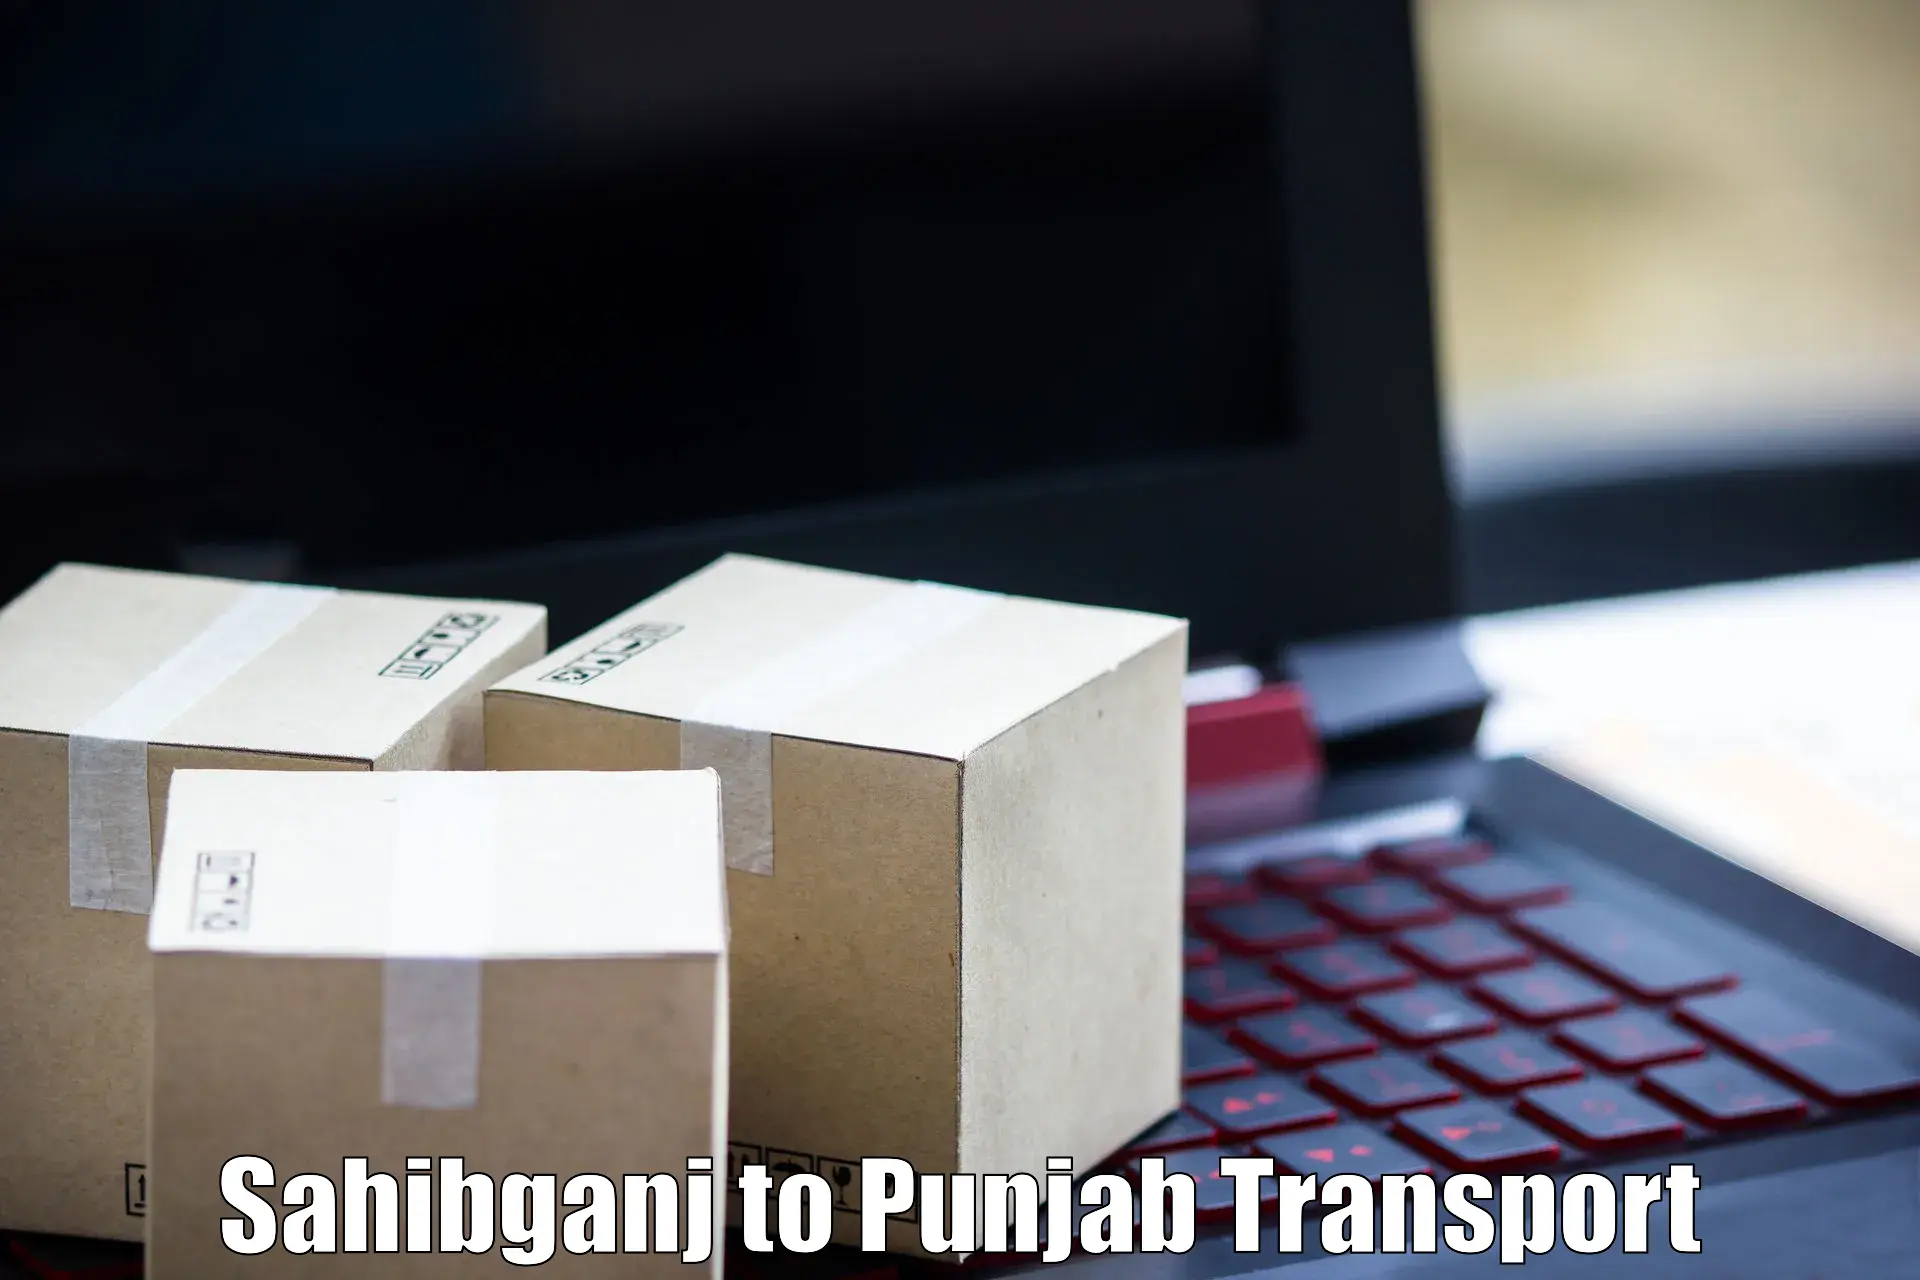 Pick up transport service Sahibganj to Raikot